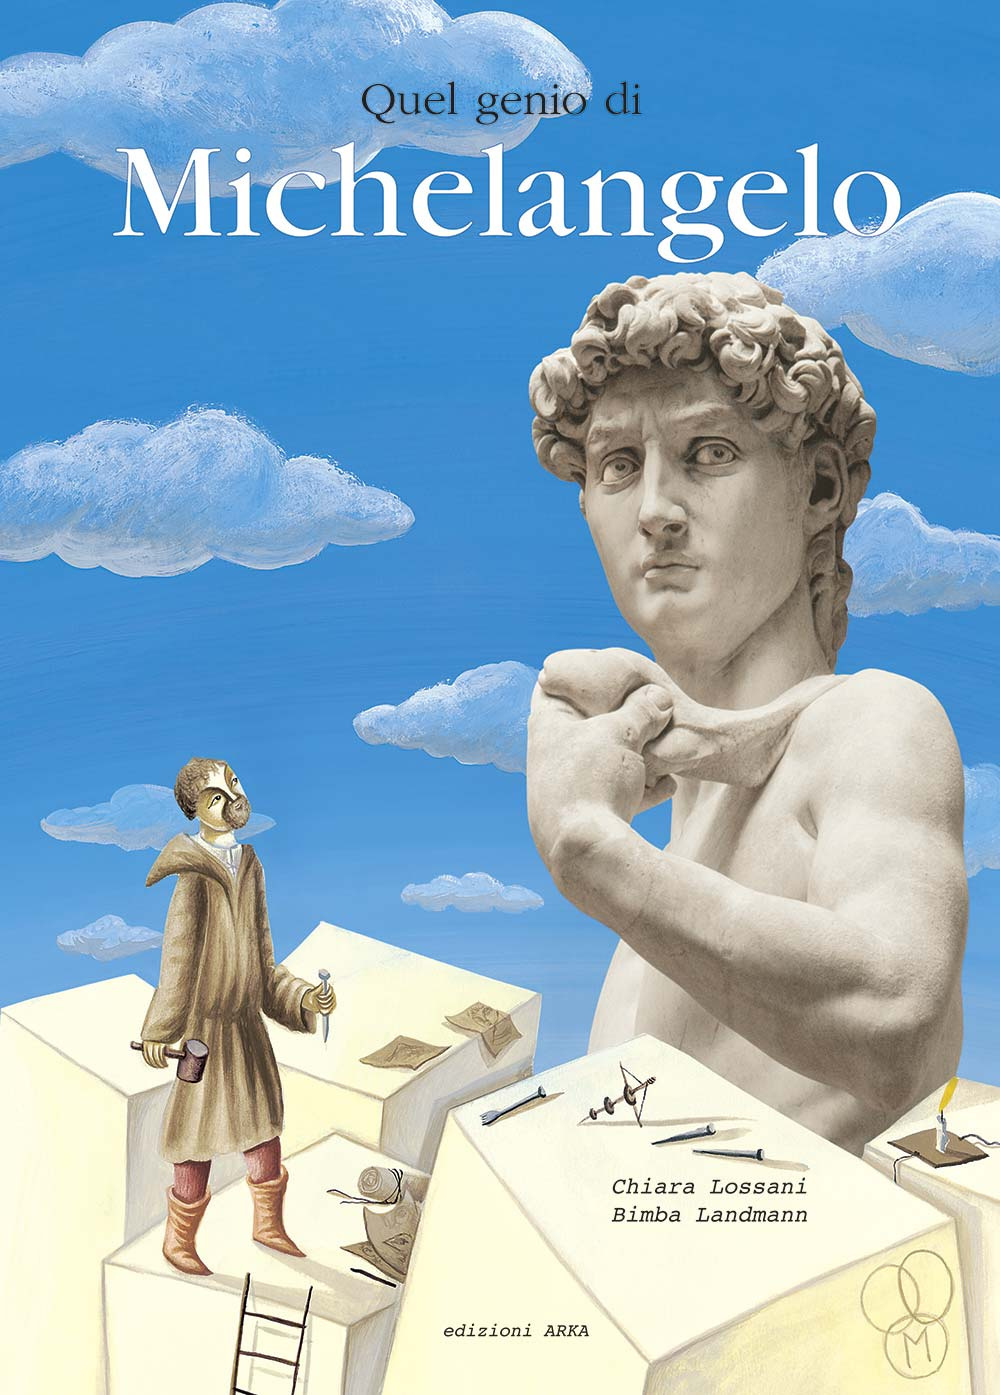 Image of Quel genio di Michelangelo